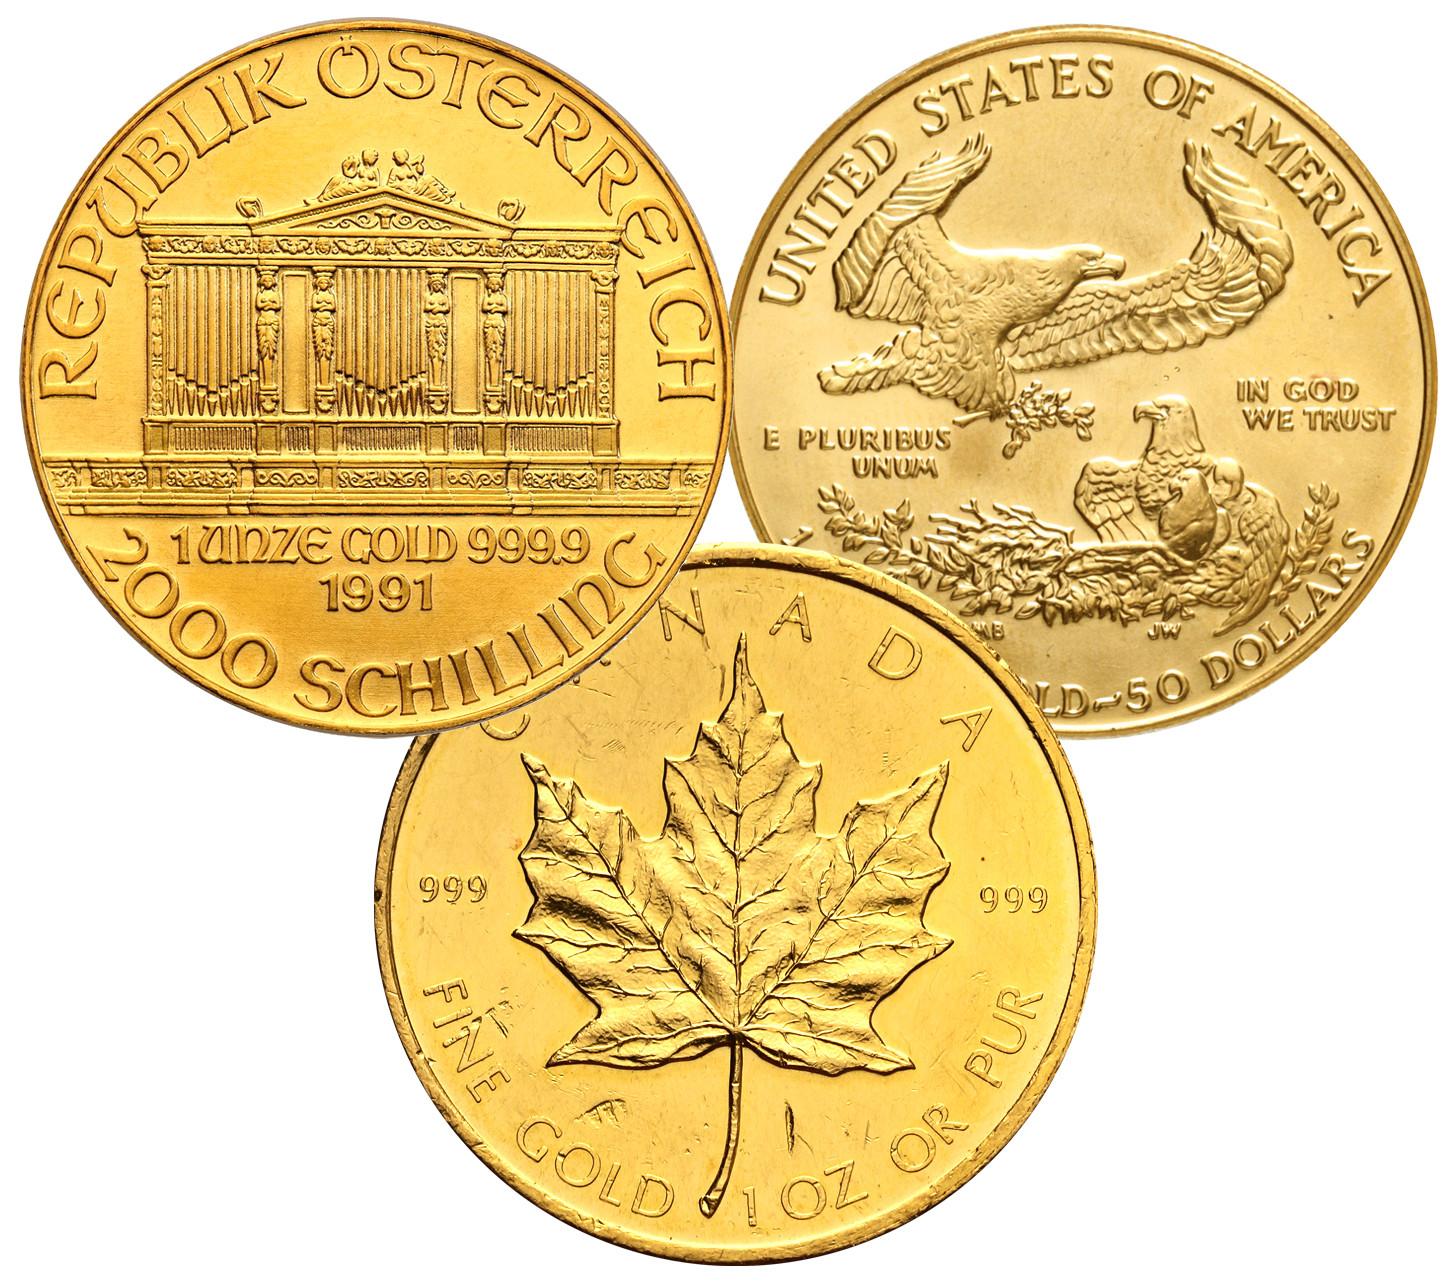 Monety - Uncja czystego złota - 1 Oz Au.999